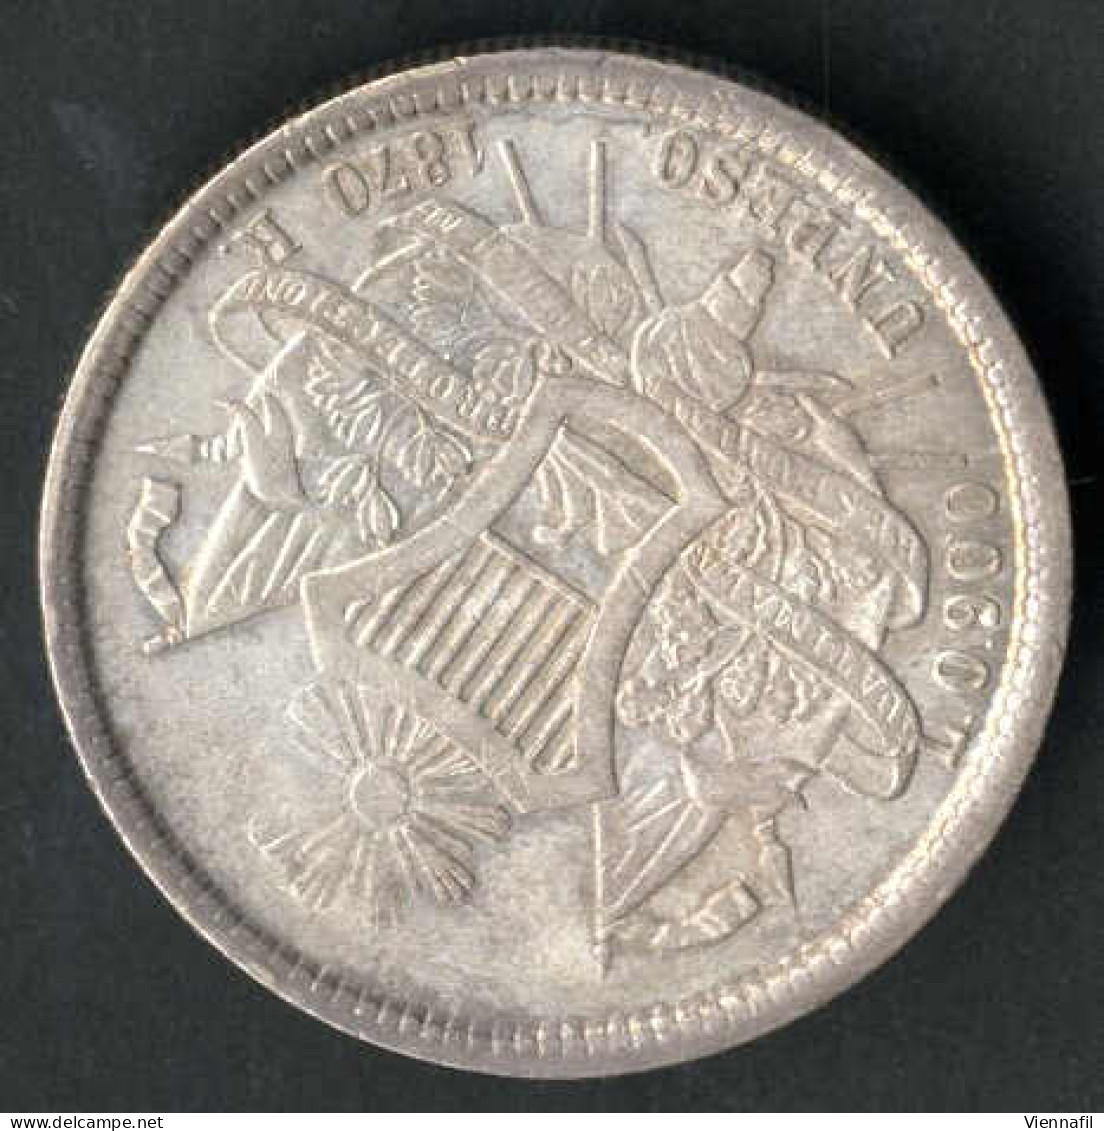 50 Centavos, 1 Peso, 1870 Und 1963, Lot Mit Vier Silbermünzen, Sehr Schön Bis Unz., Feingewicht 48 Gr., KM 190.1, 195, 2 - Guatemala